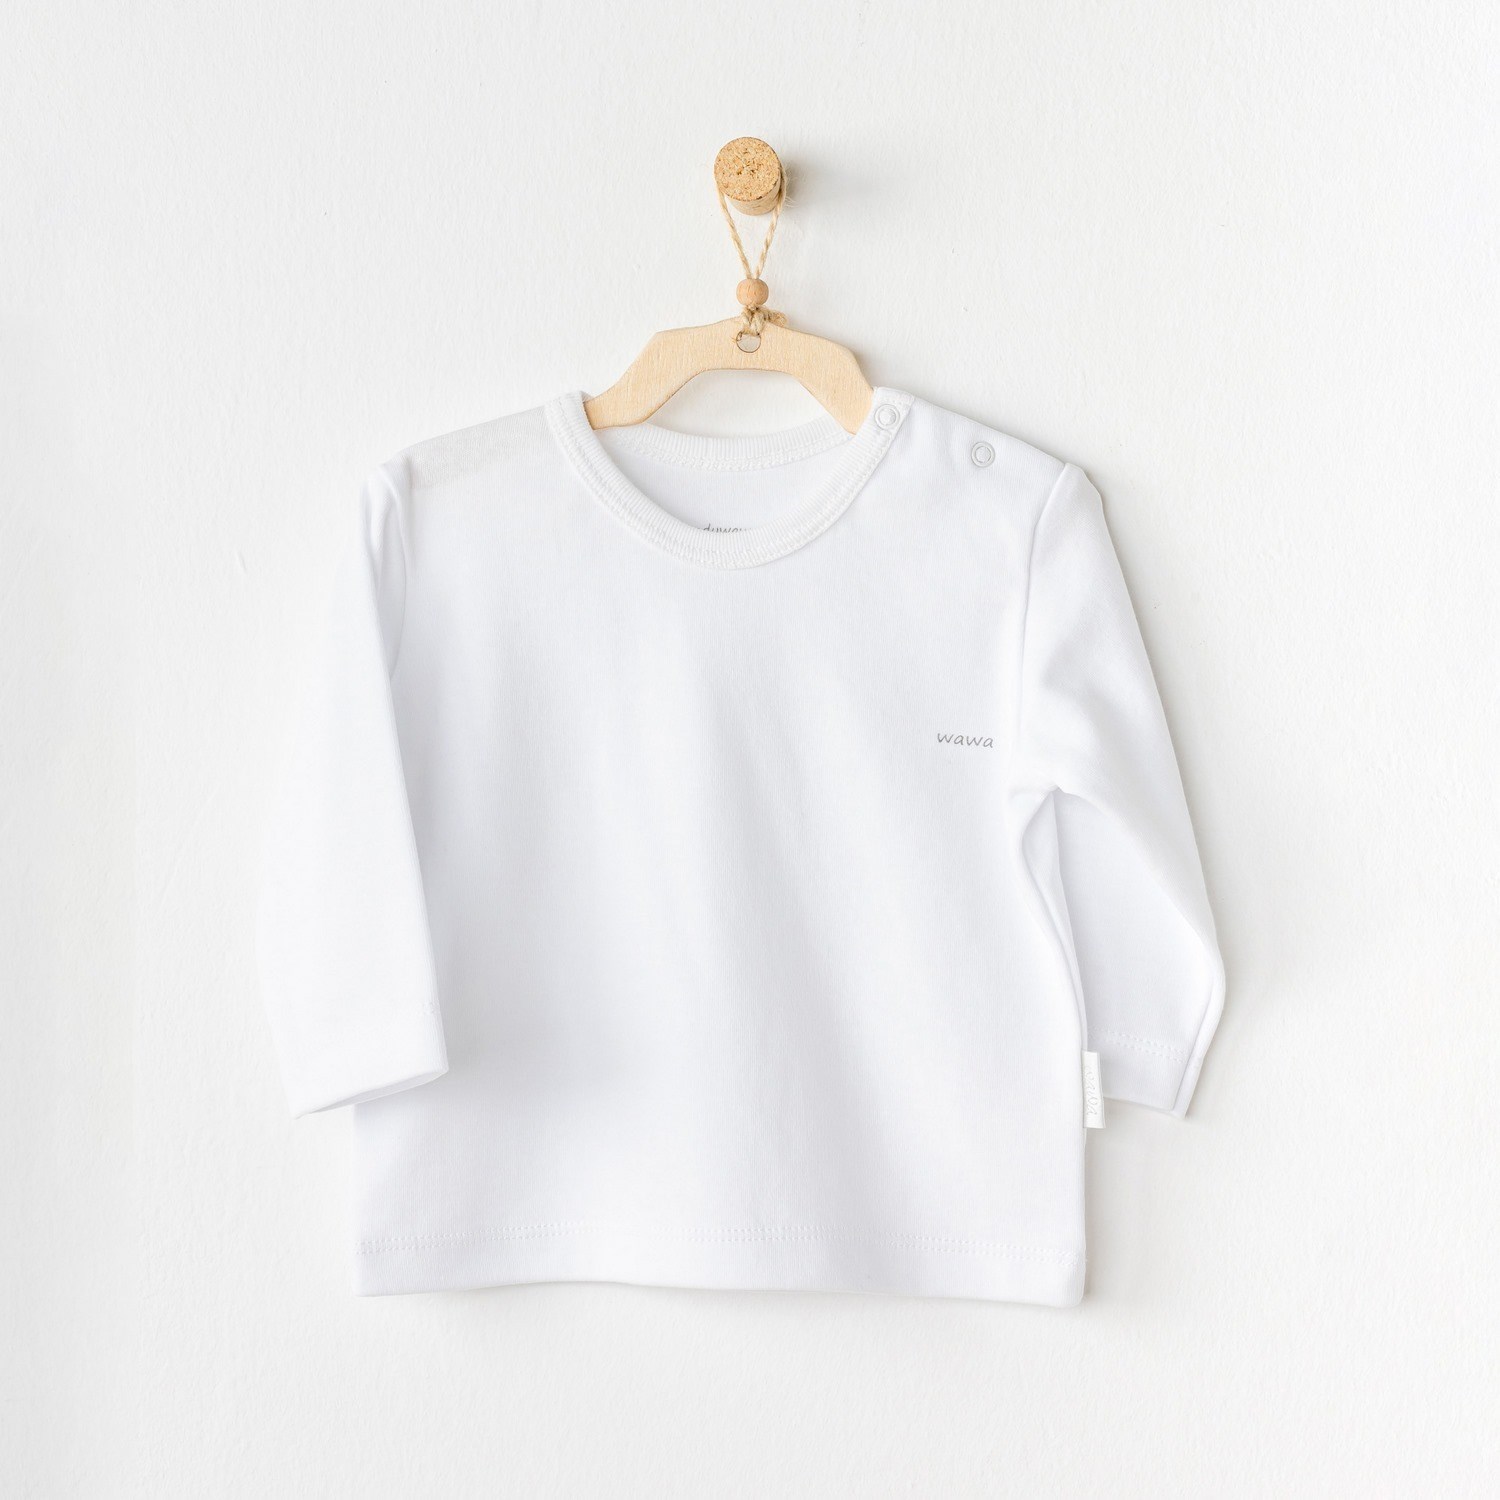 Andywawa Basic Bebek T-Shirt AC24437 Beyaz